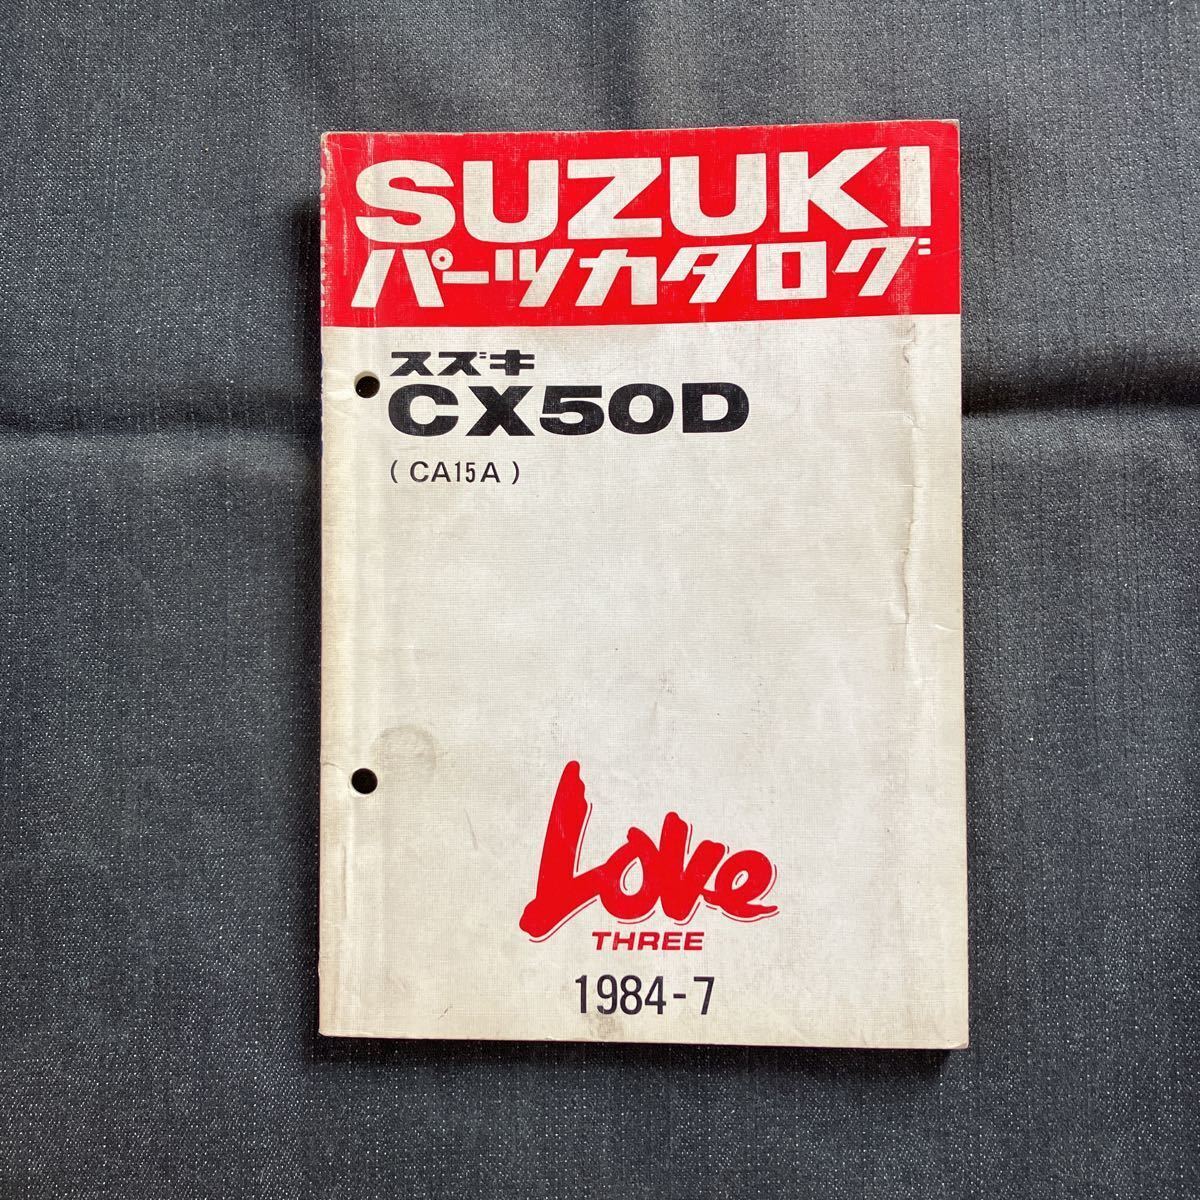 P072500 Suzuki Love Three Cx50D Ca15A Parts Catalog 1984 July J3